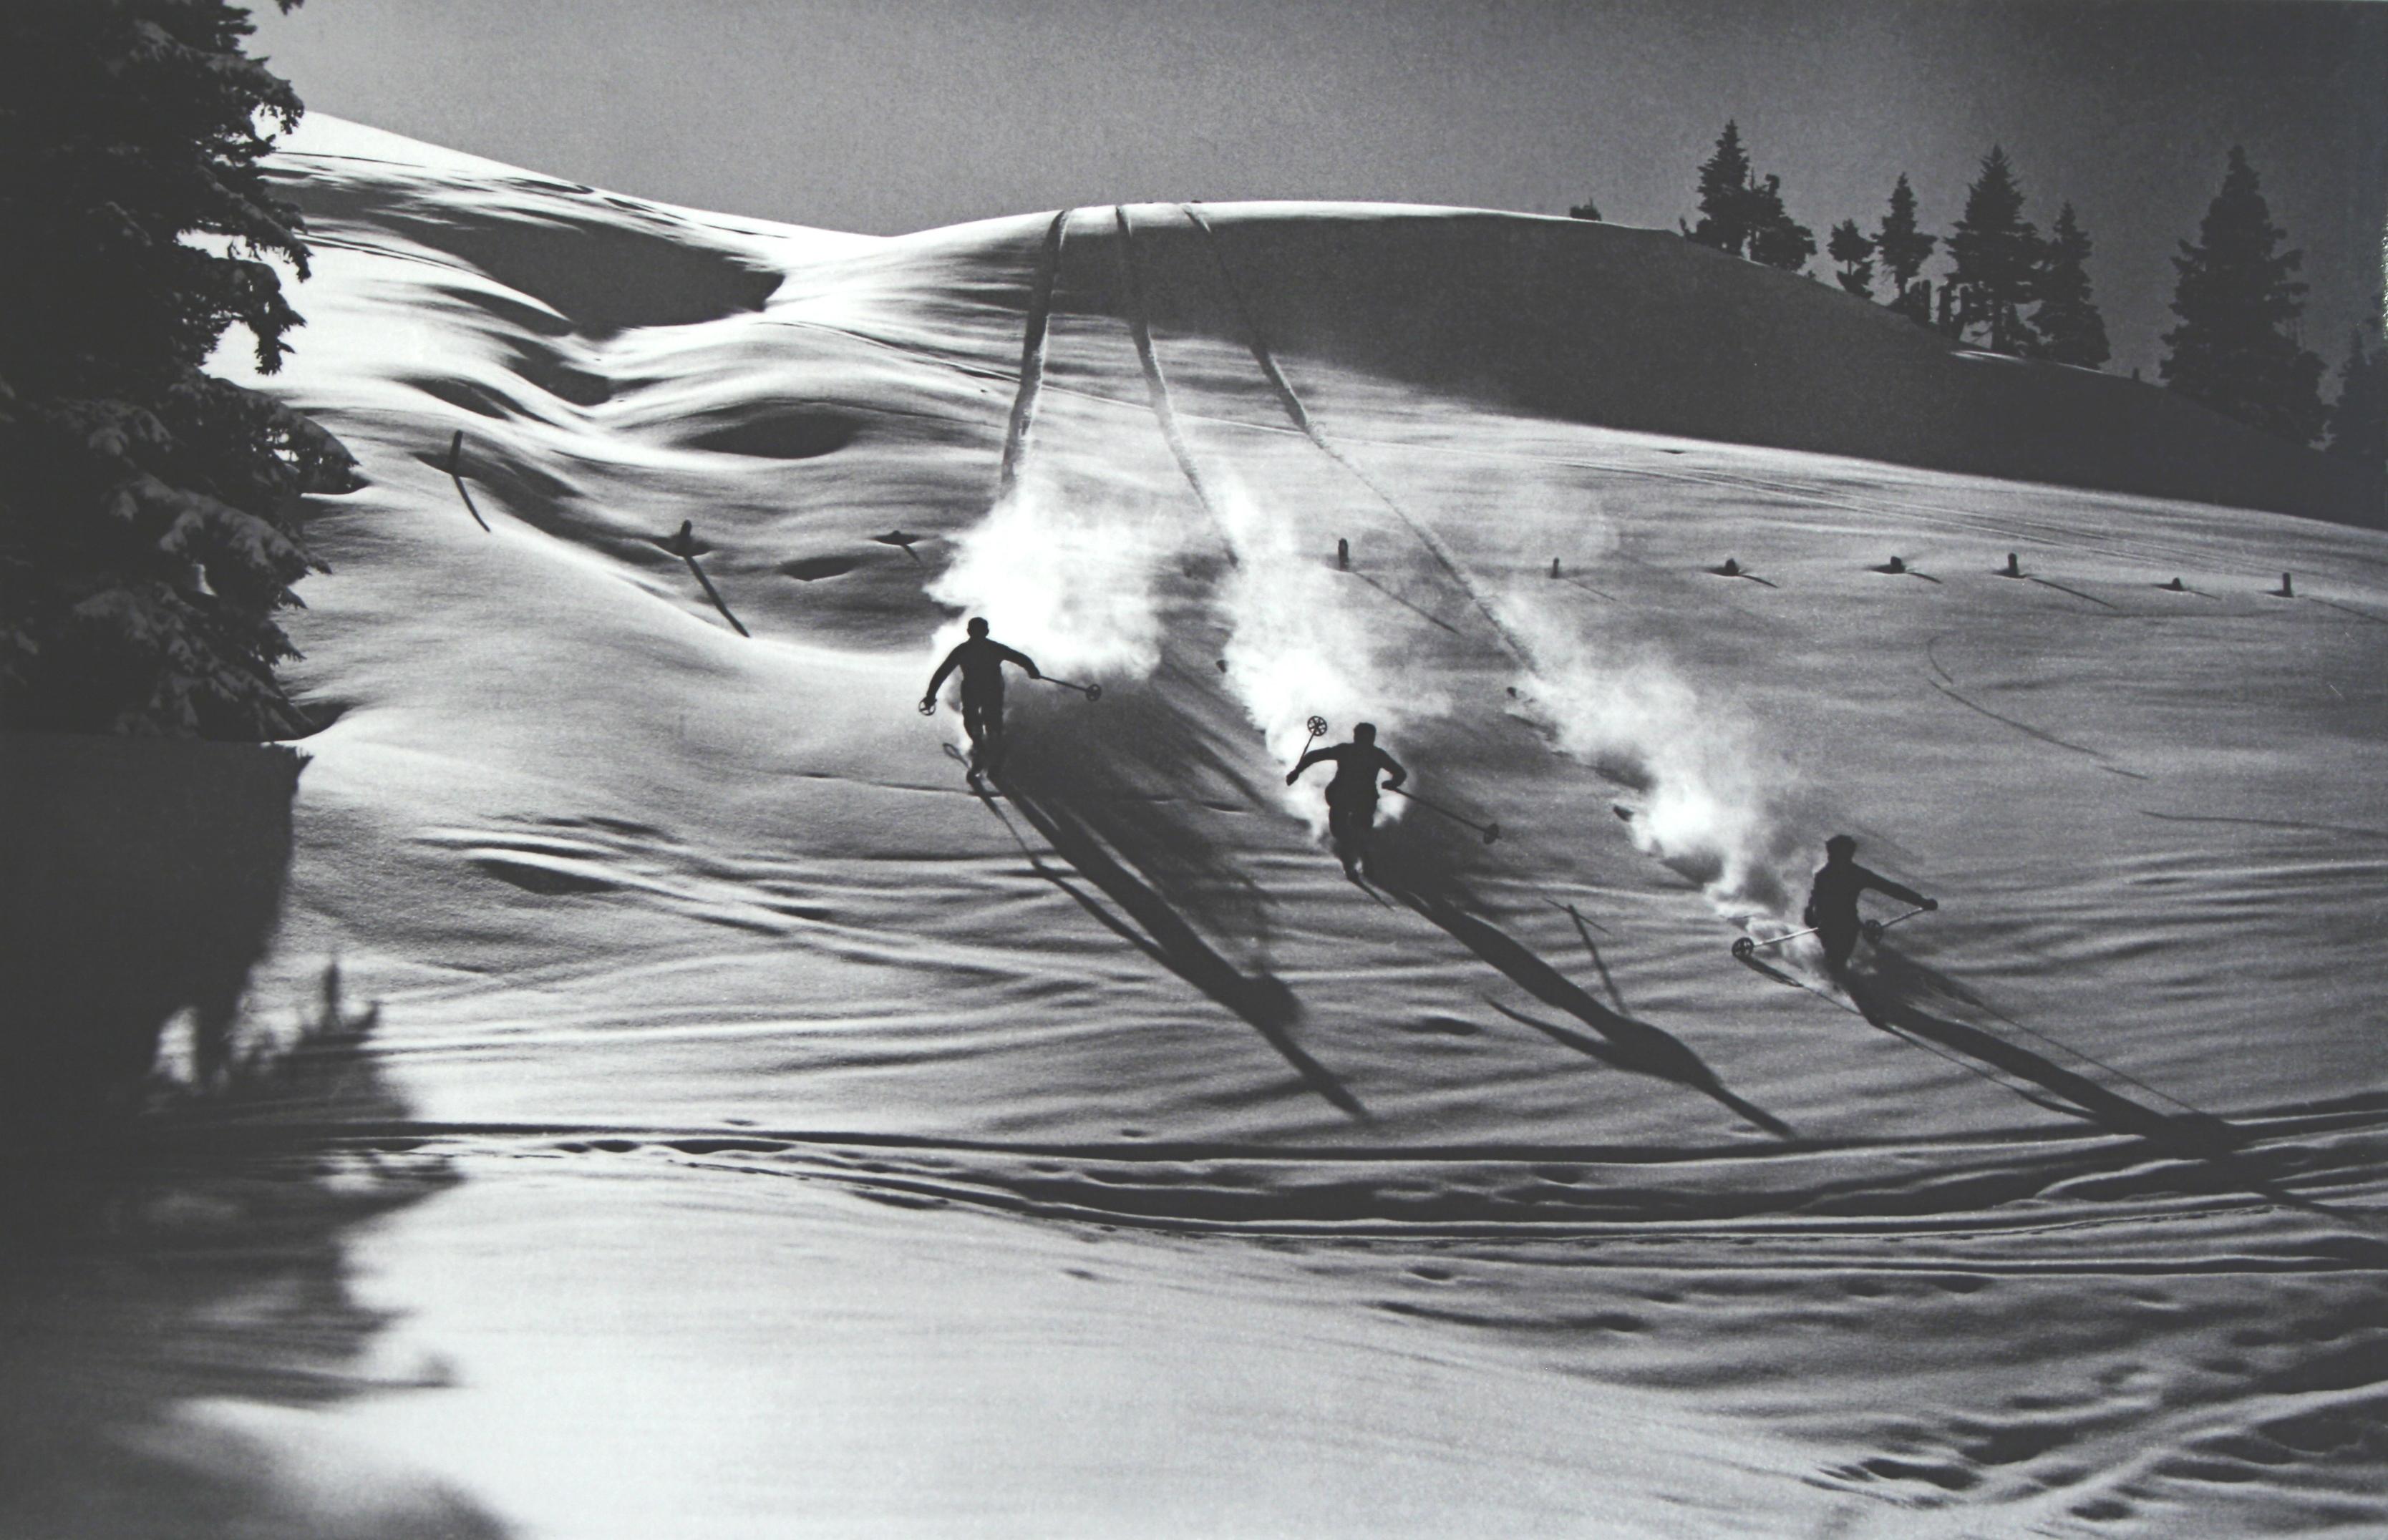 Photographie de ski ancienne, photographie de ski alpin ancienne.
descente dans la poudreuse